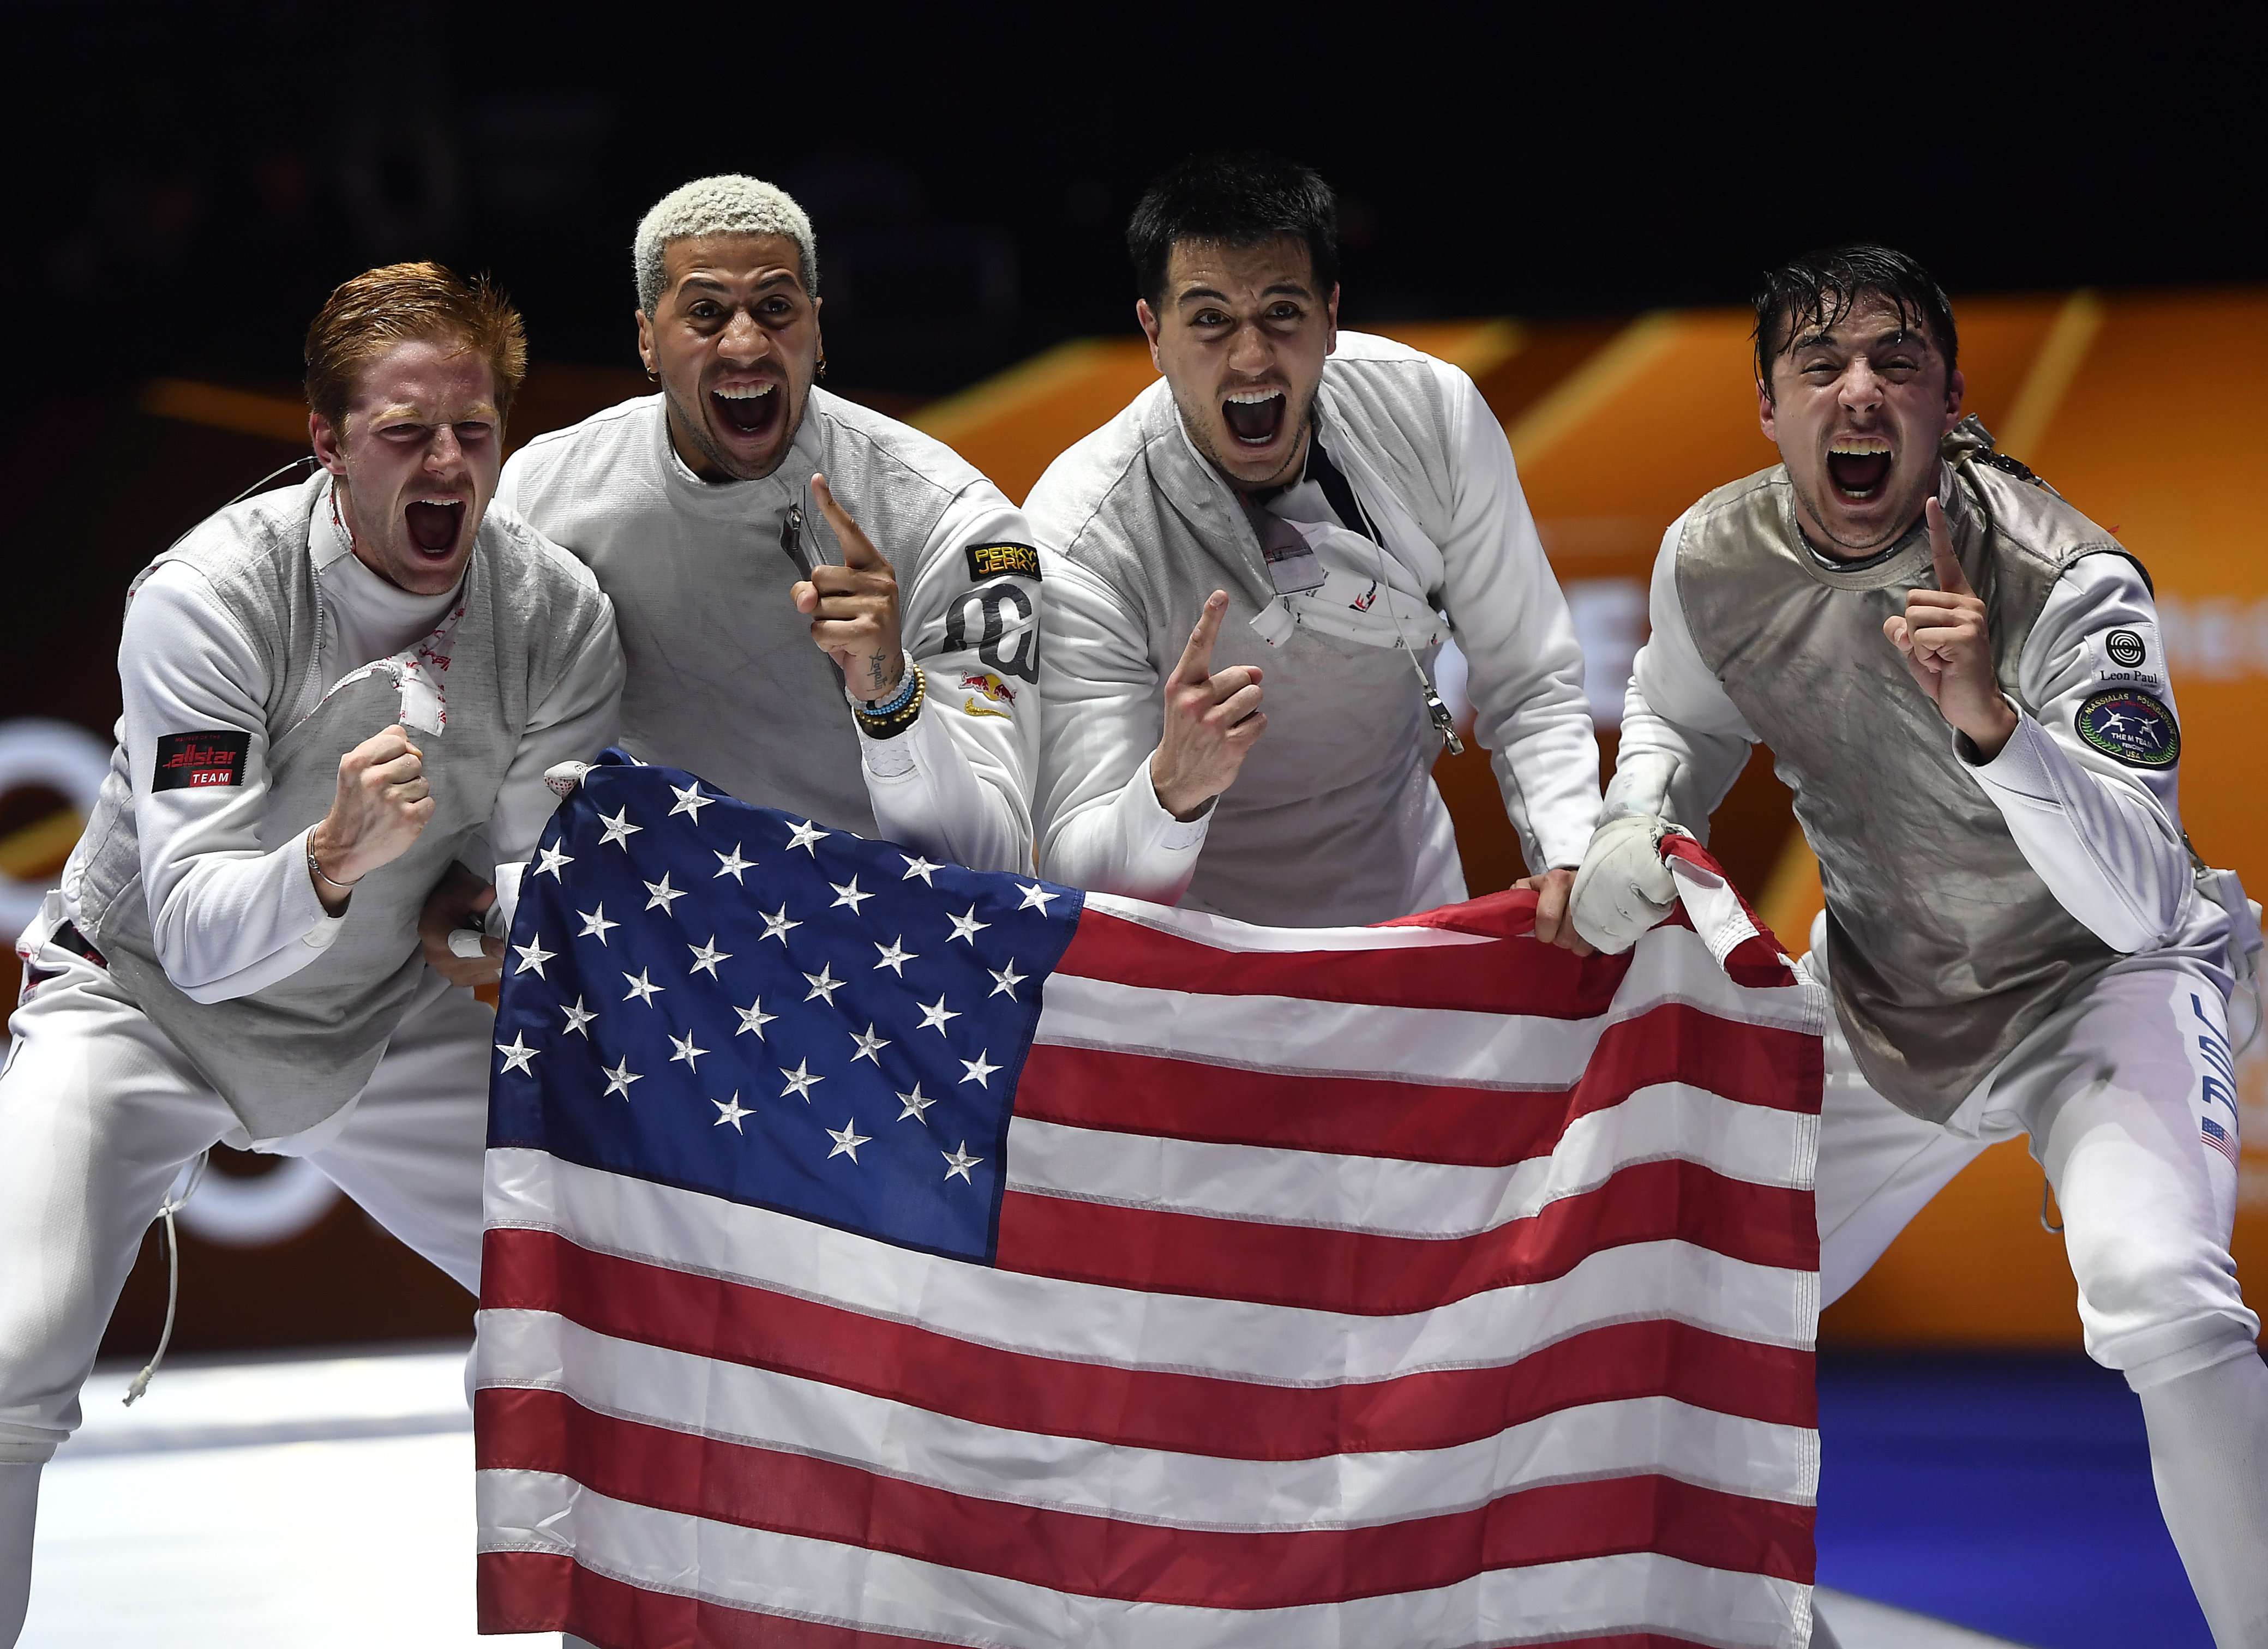 Fechten - Florettmannschaft der Männer - USA gewinnen Gold - Fotos